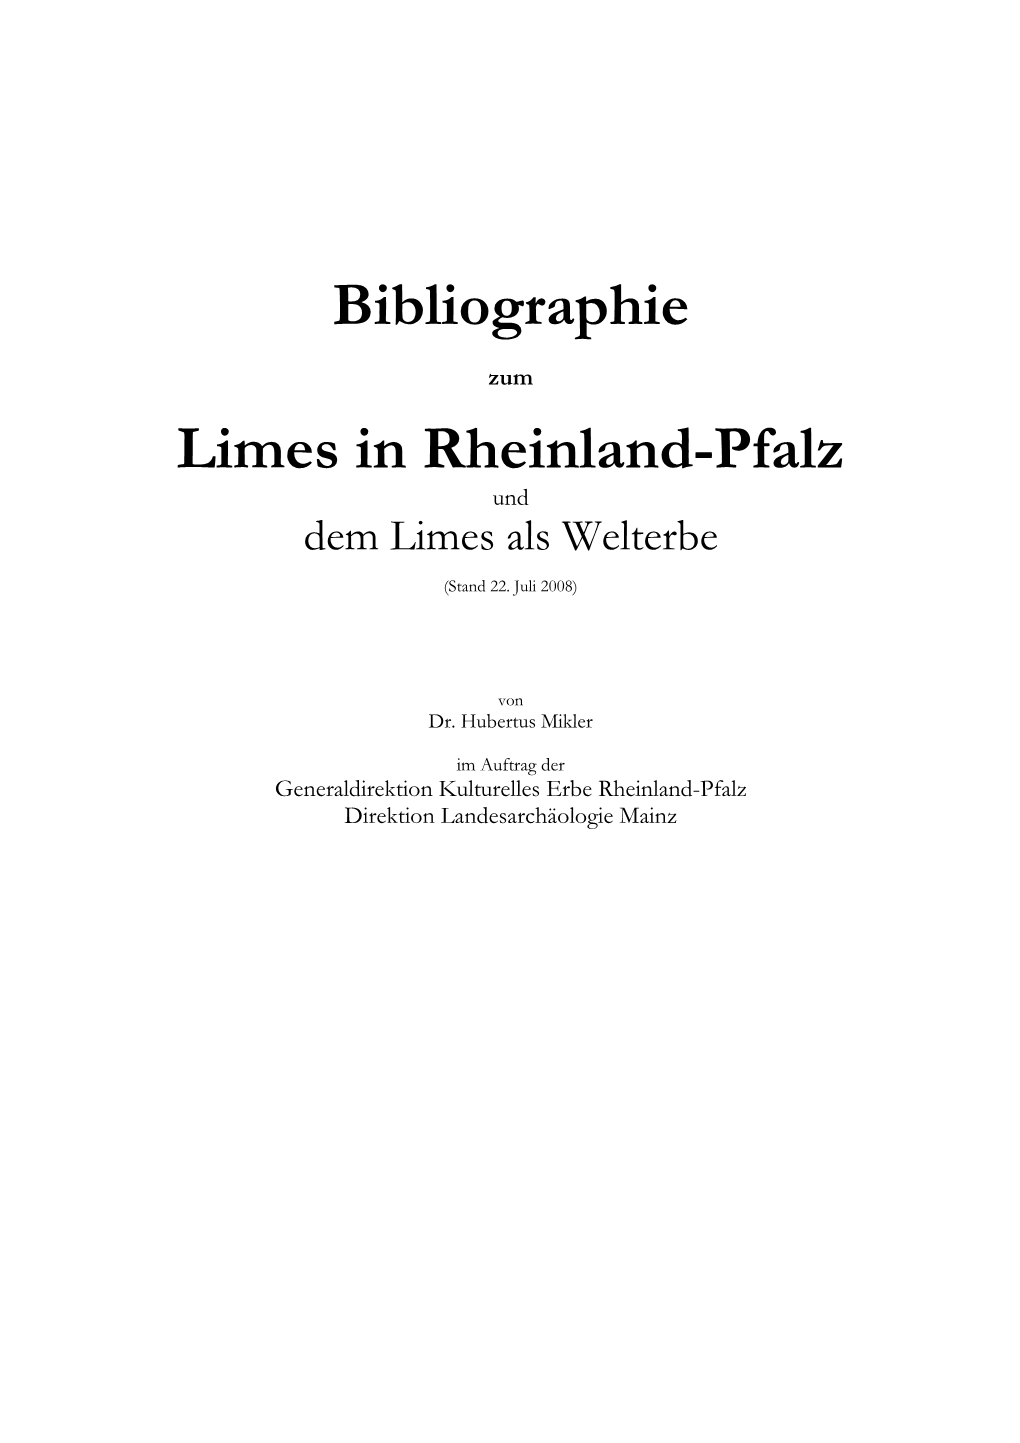 Bibliographie Limes in Rheinland-Pfalz